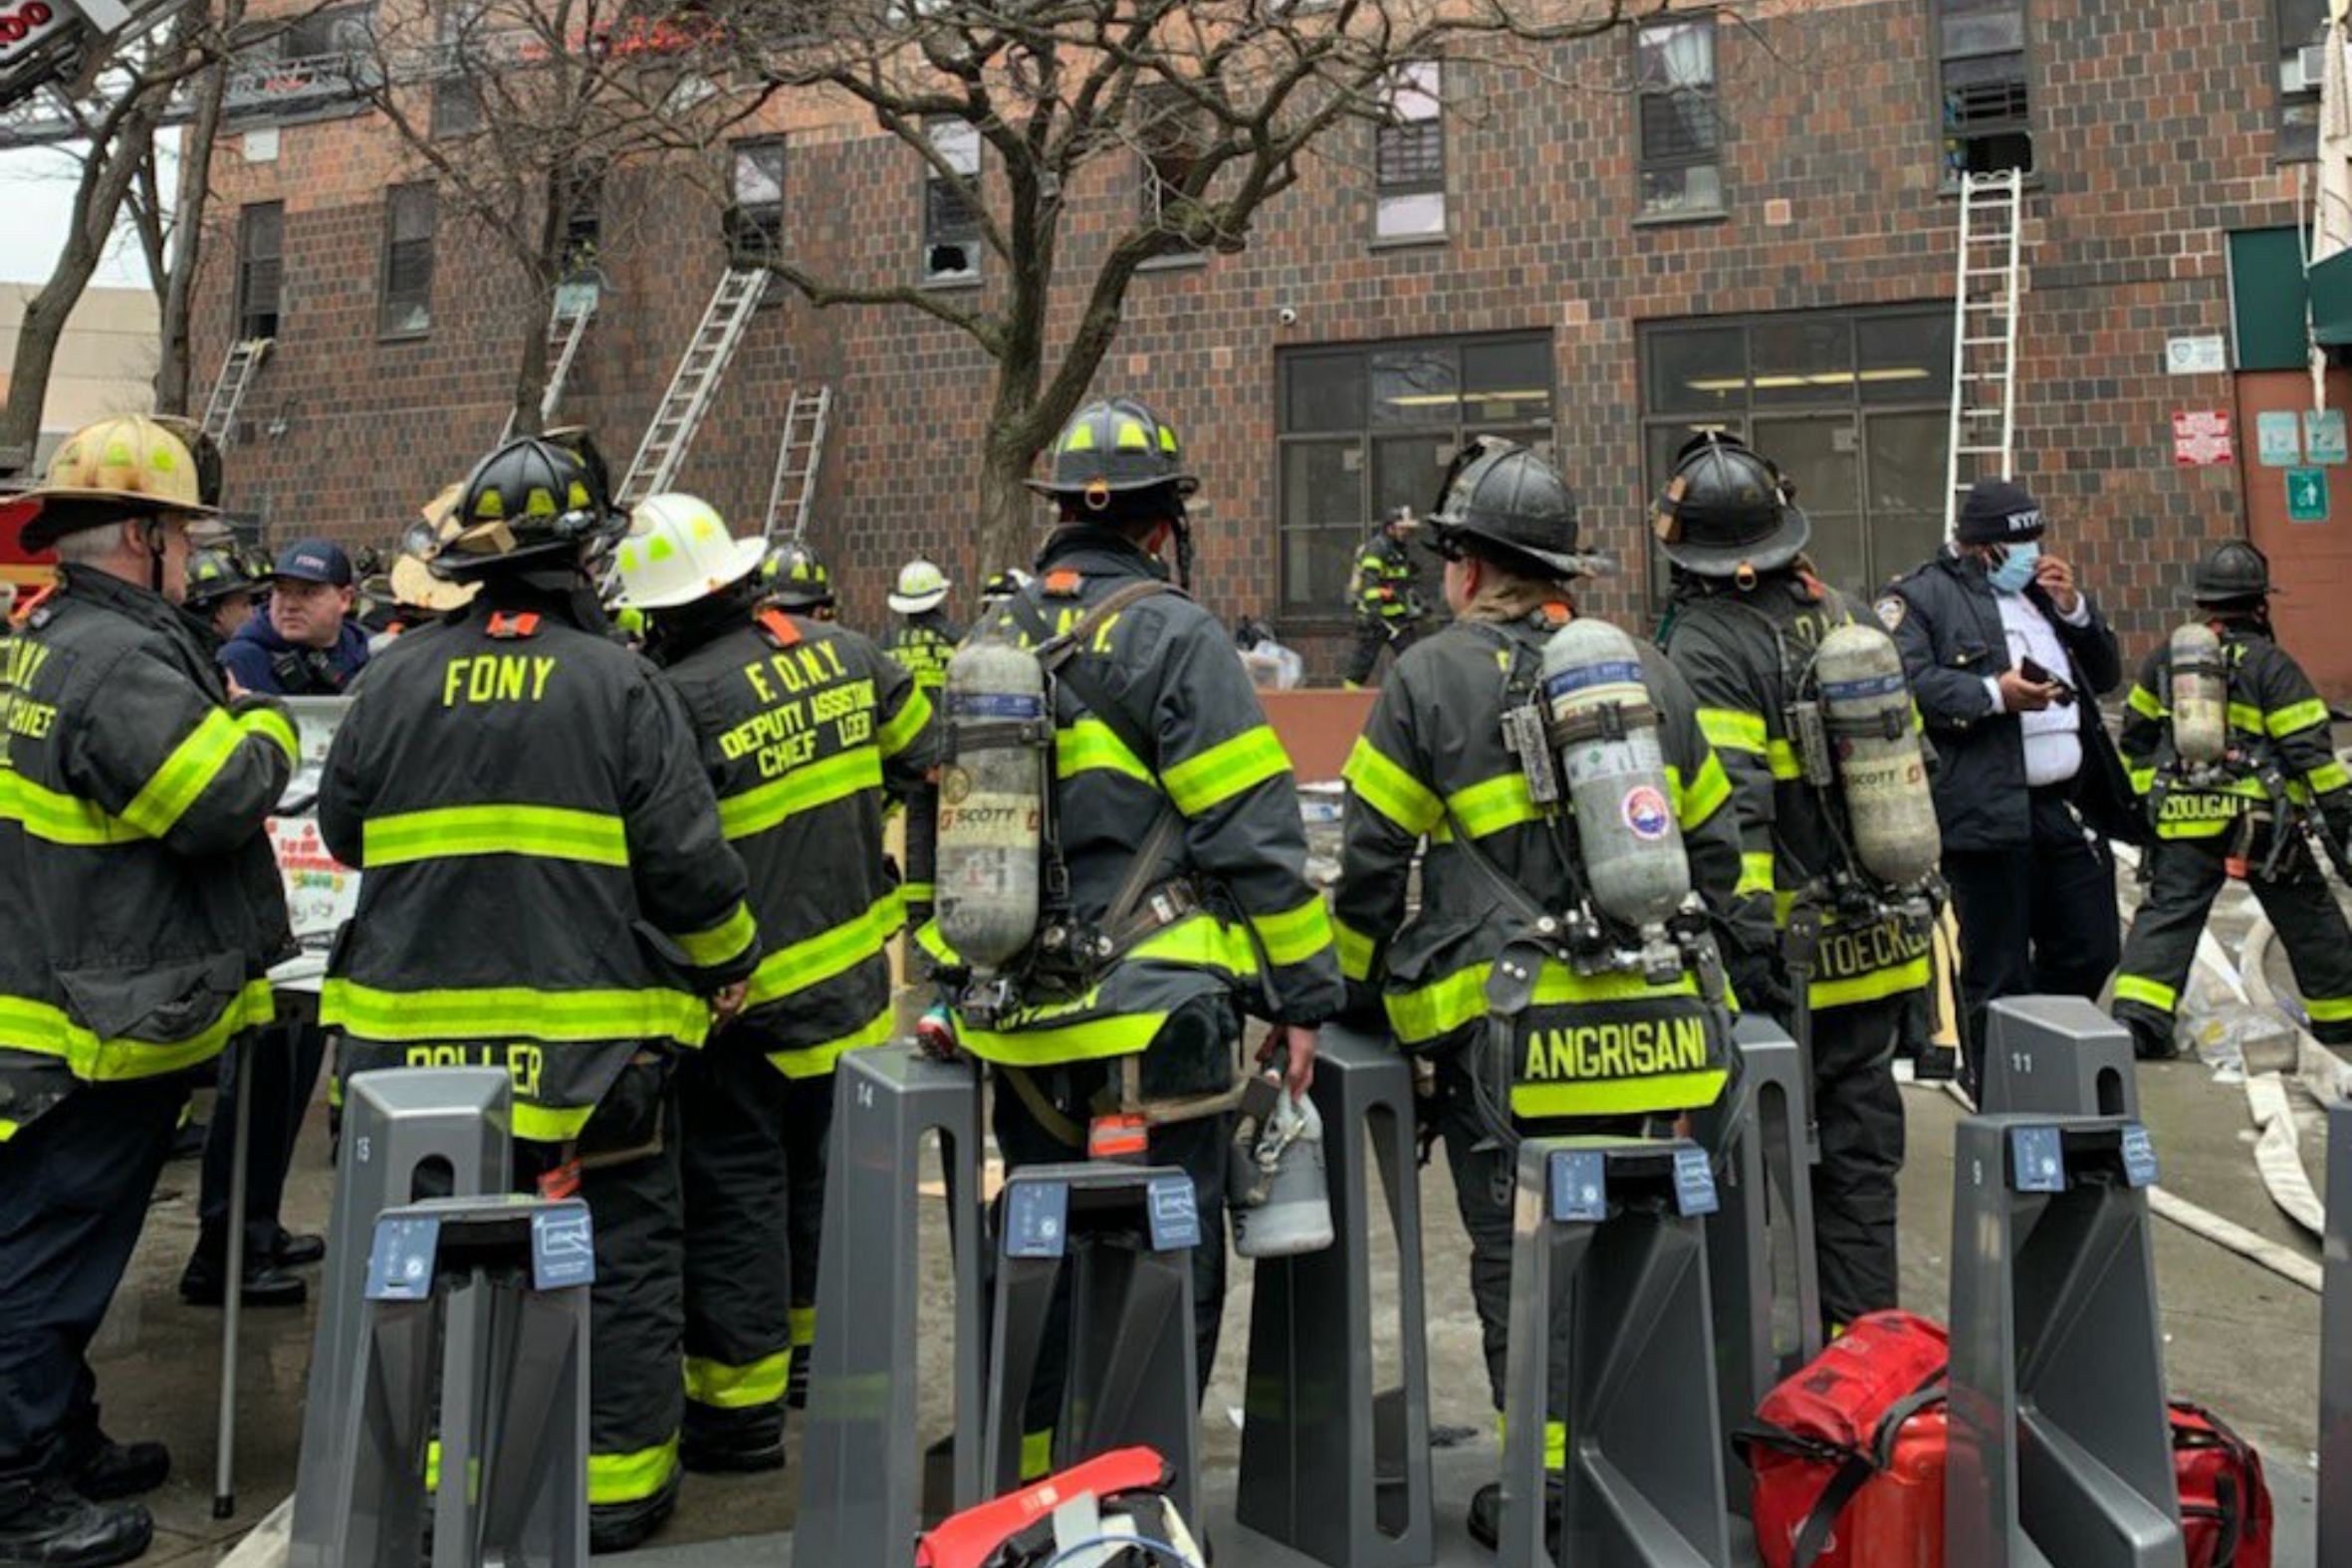 Fotografia: Departament de bombers de Nova York